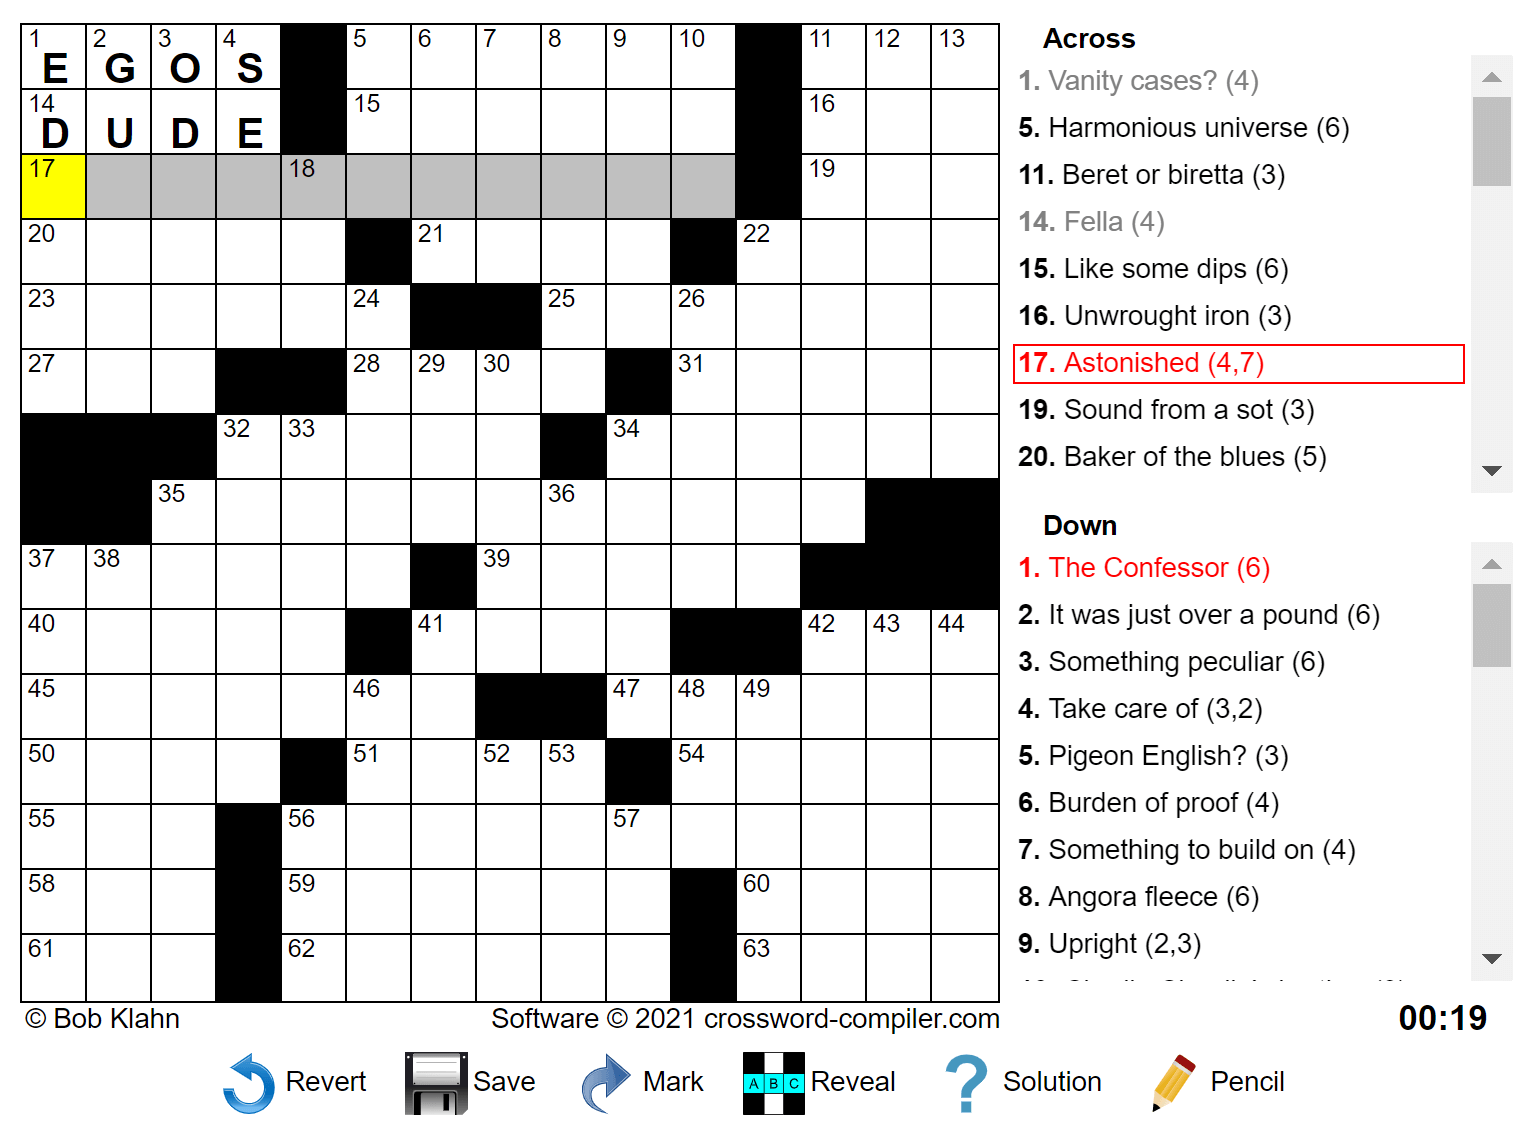 herrlich-vorausgehen-k-ste-crossword-puzzle-websites-botschafter